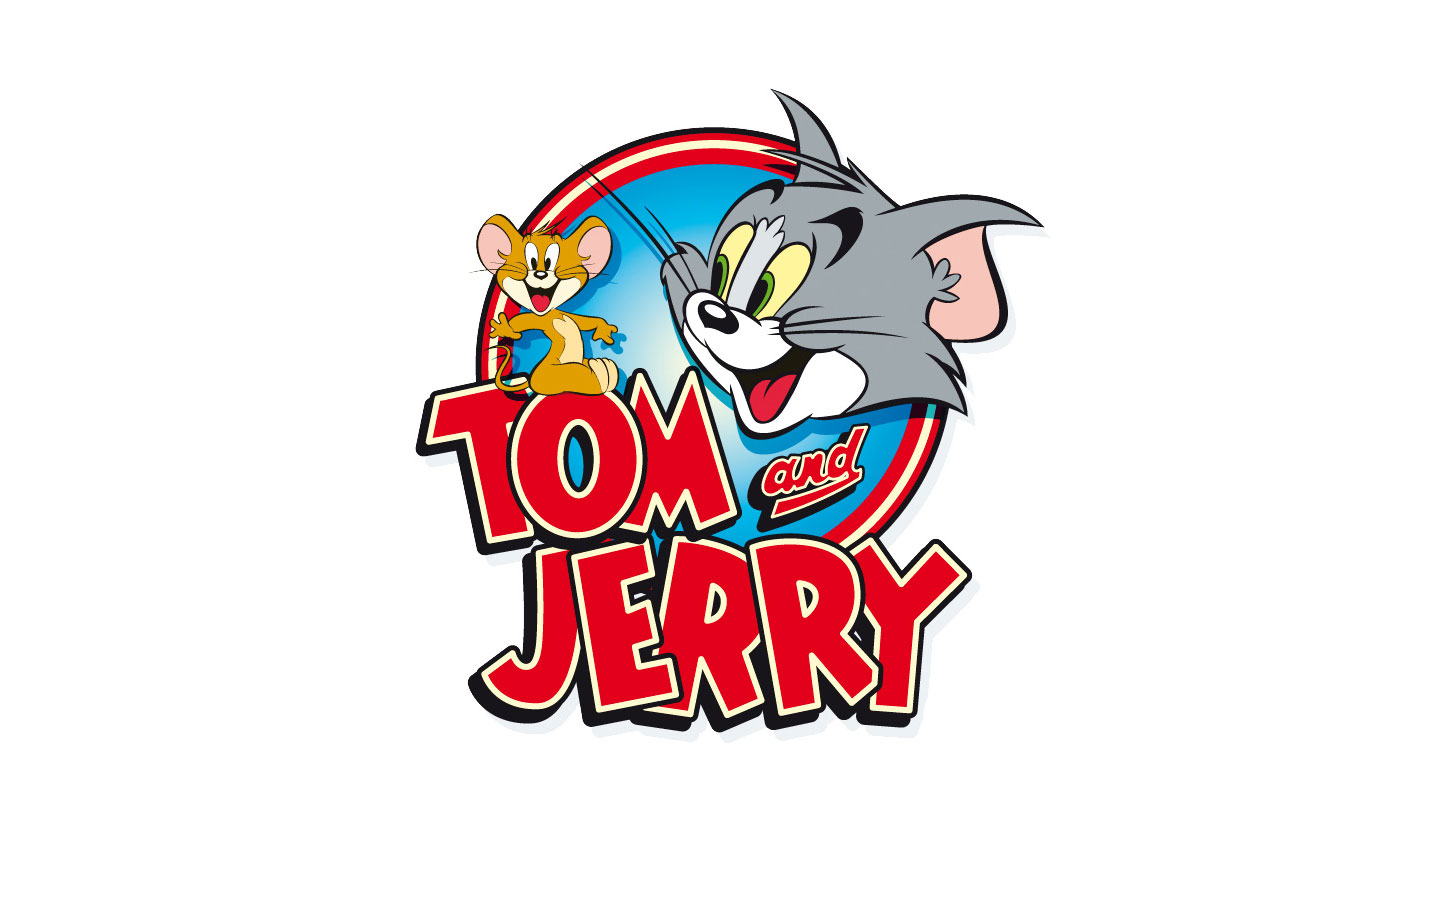 Tải hình ảnh đẹp về Tom và Jerry